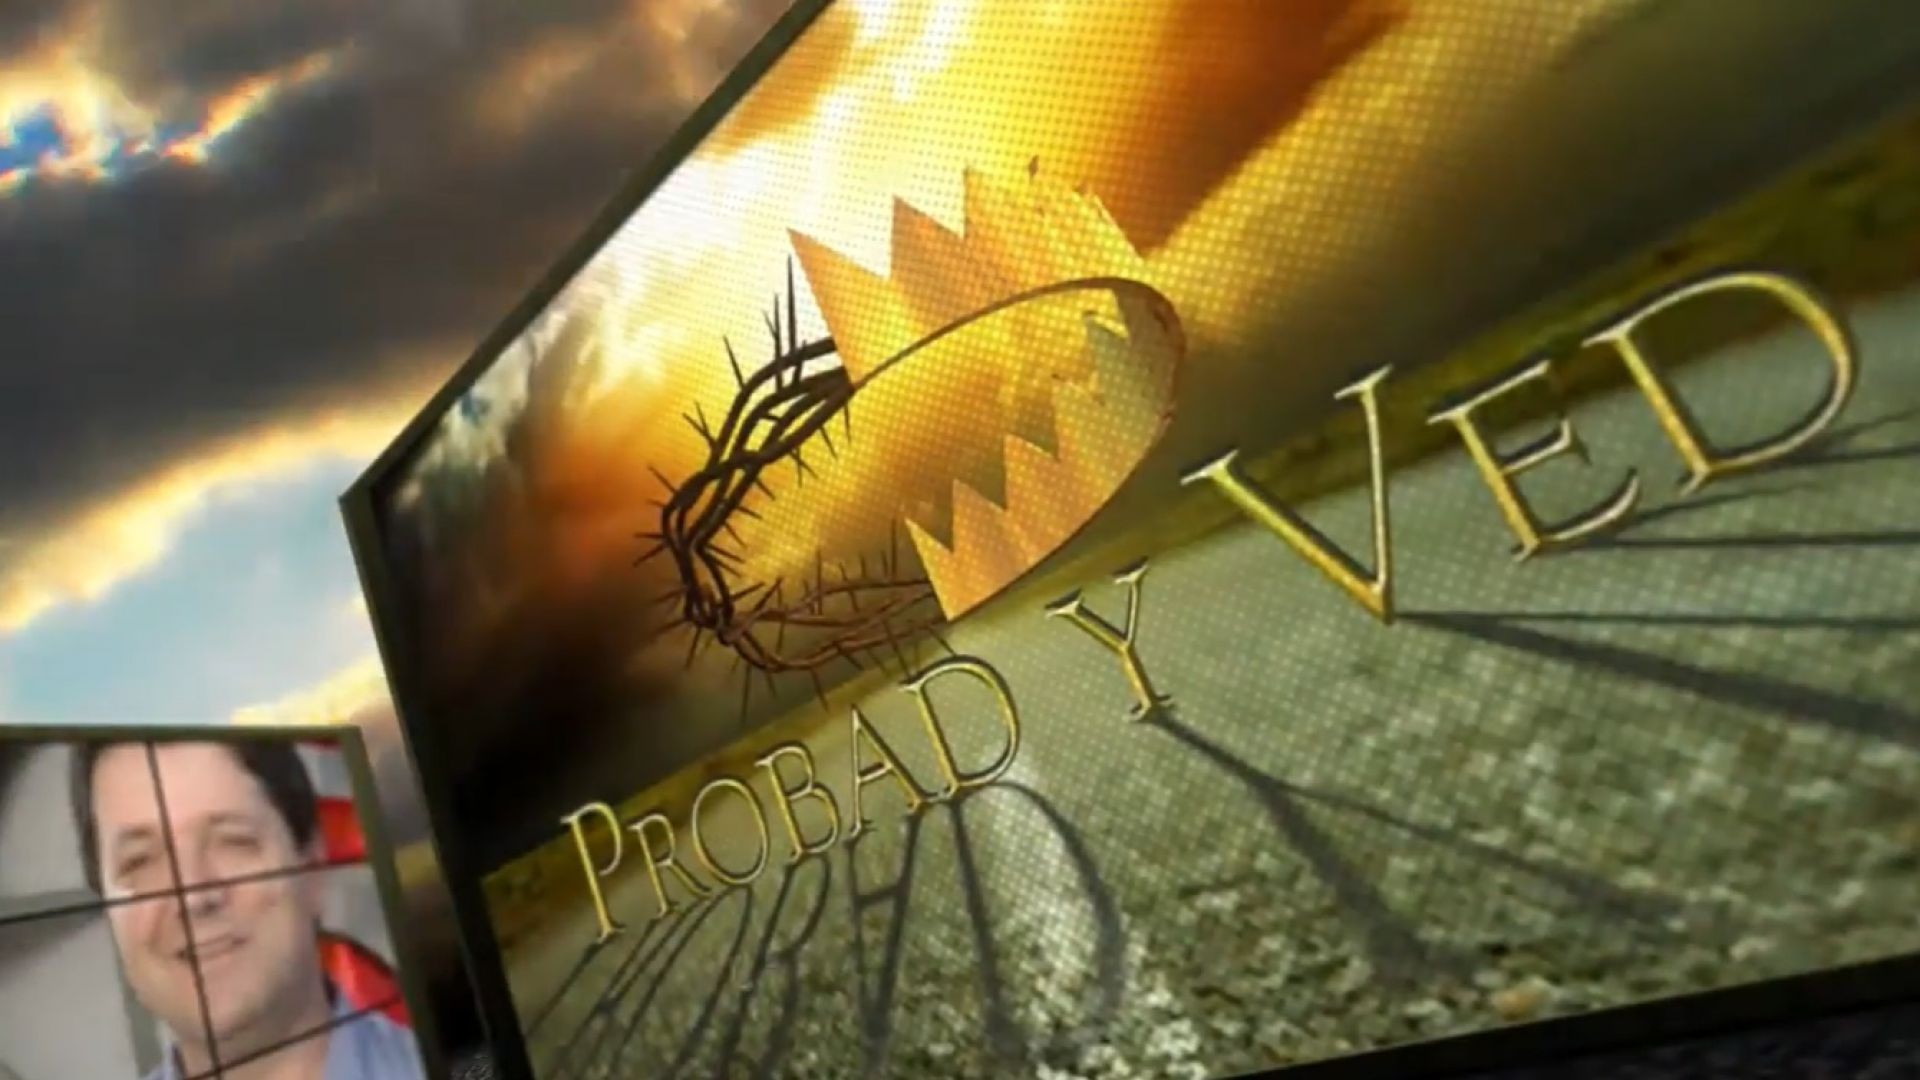 ⁣Probad y Ved 2012 - El poder de la oracion